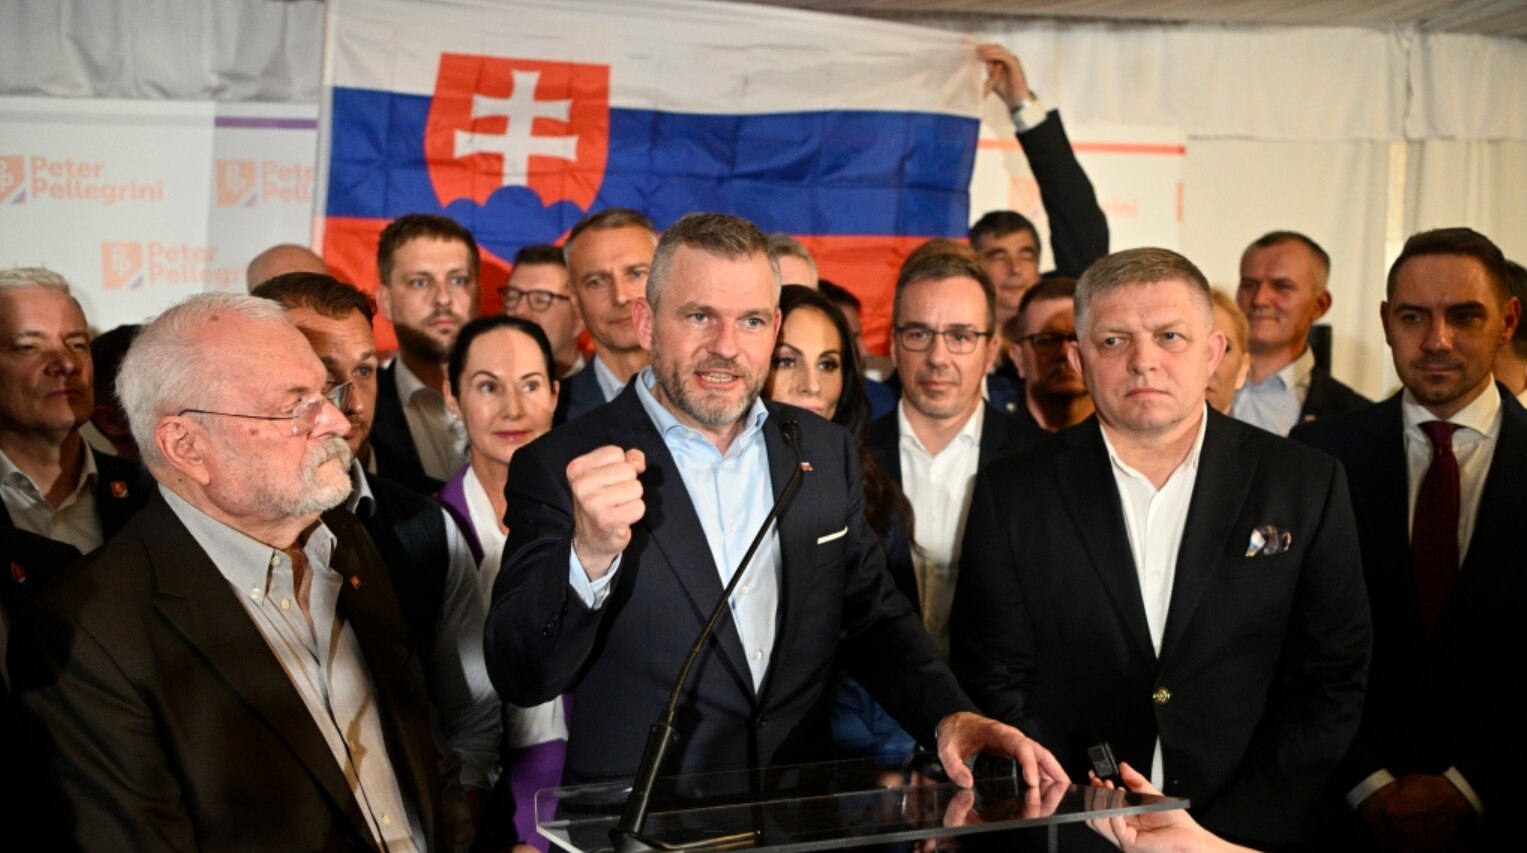 Thế giới - Tân Tổng thống Slovakia là đồng minh thân cận của Thủ tướng “thân Nga”